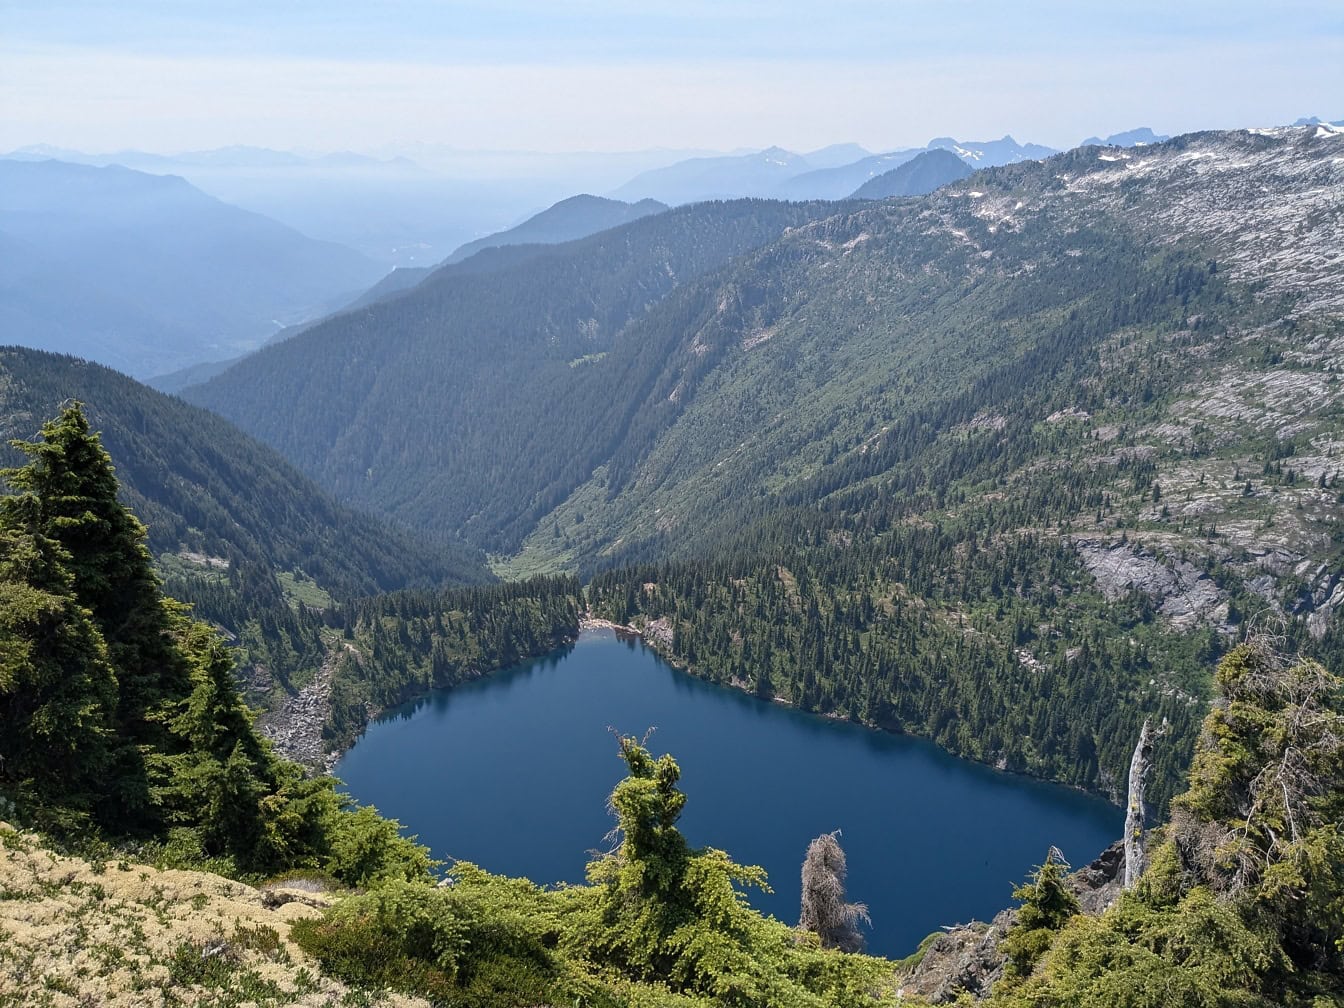 Wunderschönes Seeufer des Thornton Lake mit Bergen im Hintergrund im North Cascades National Park in Washington